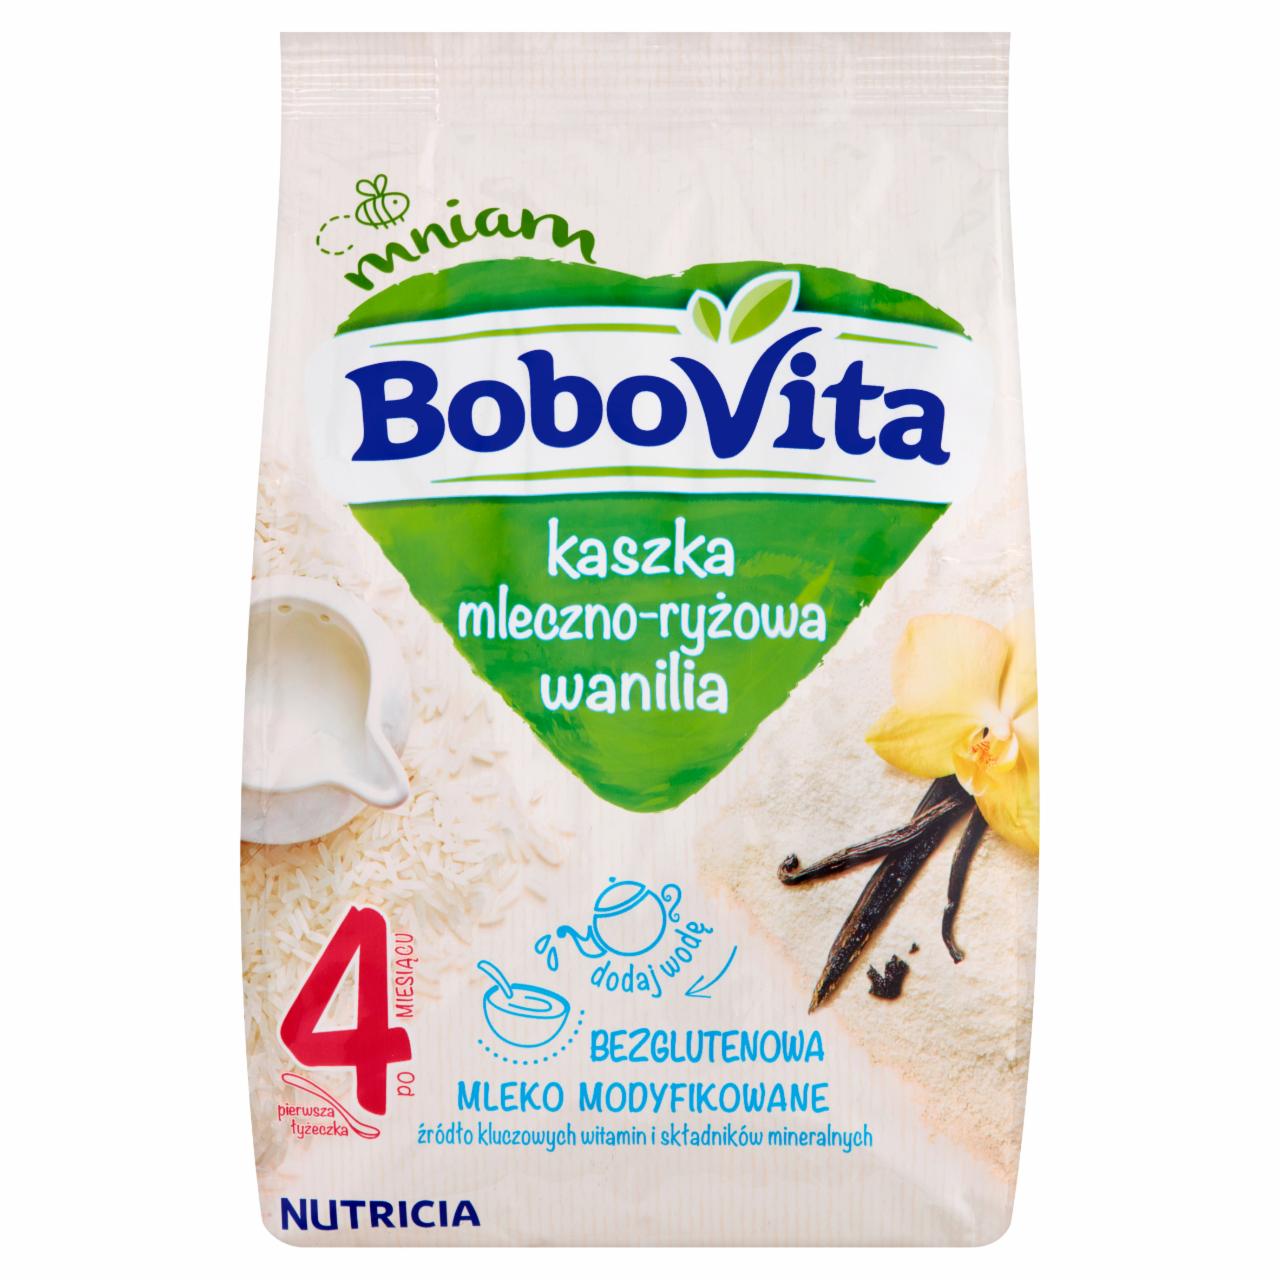 Zdjęcia - Kaszka mleczno-ryżowa wanilia po 4 miesiącu BoboVita